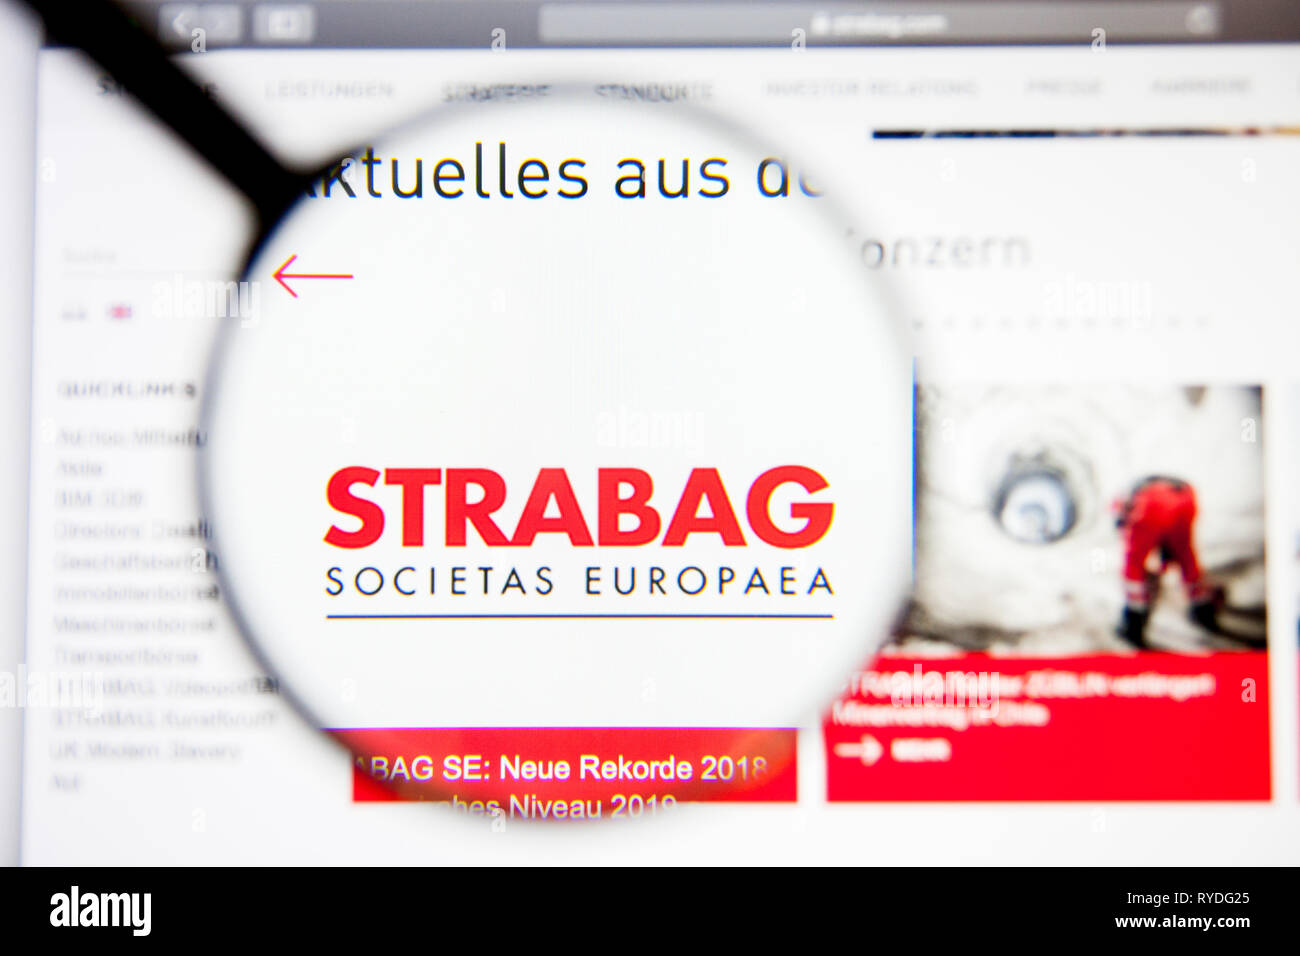 Los Angeles, California, Estados Unidos - 5 de marzo de 2019: página web de Strabag. Logotipo de Strabag visibles en pantalla, Editorial ilustrativos Foto de stock